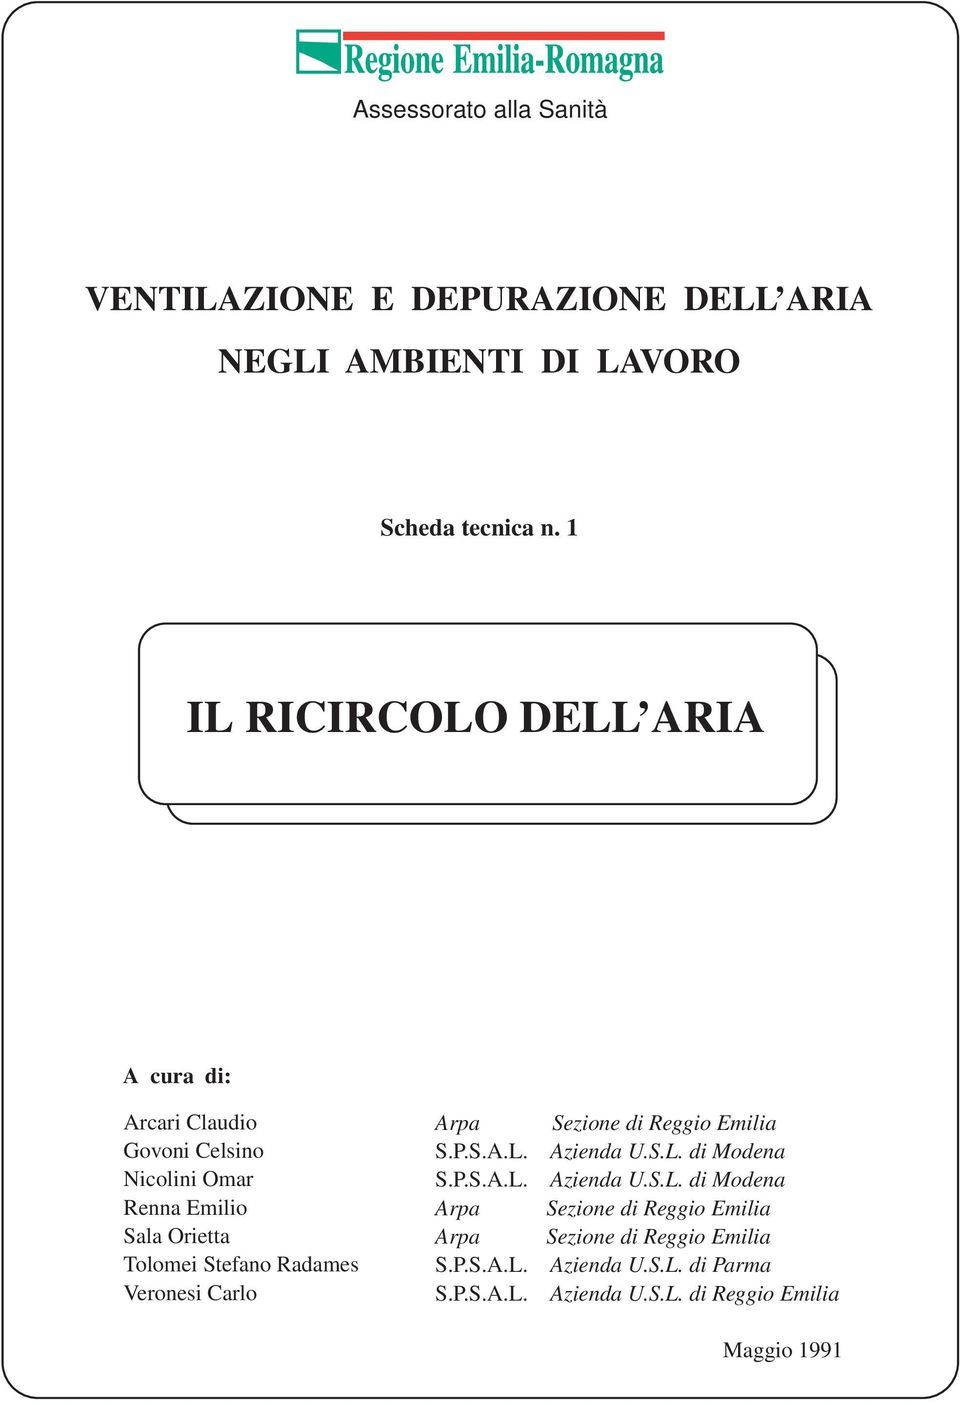 Radames Veronesi Carlo Arpa Sezione di Reggio Emilia S.P.S.A.L.